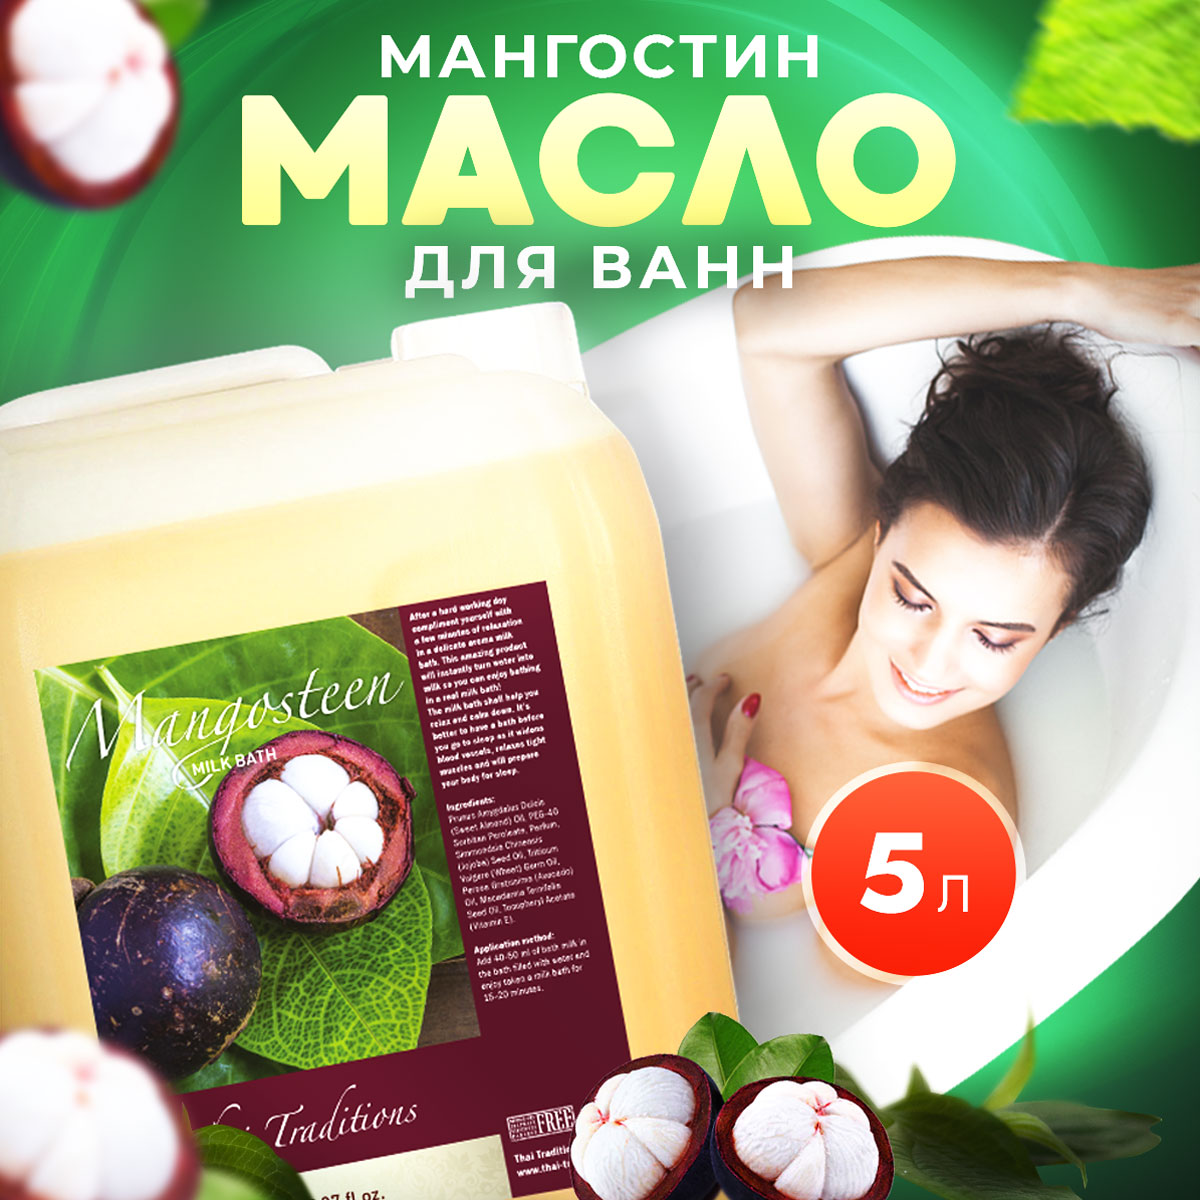 Масло для ванны и душа Thai Traditions натуральное гидрофильное увлажняющее Мангостин 5 л